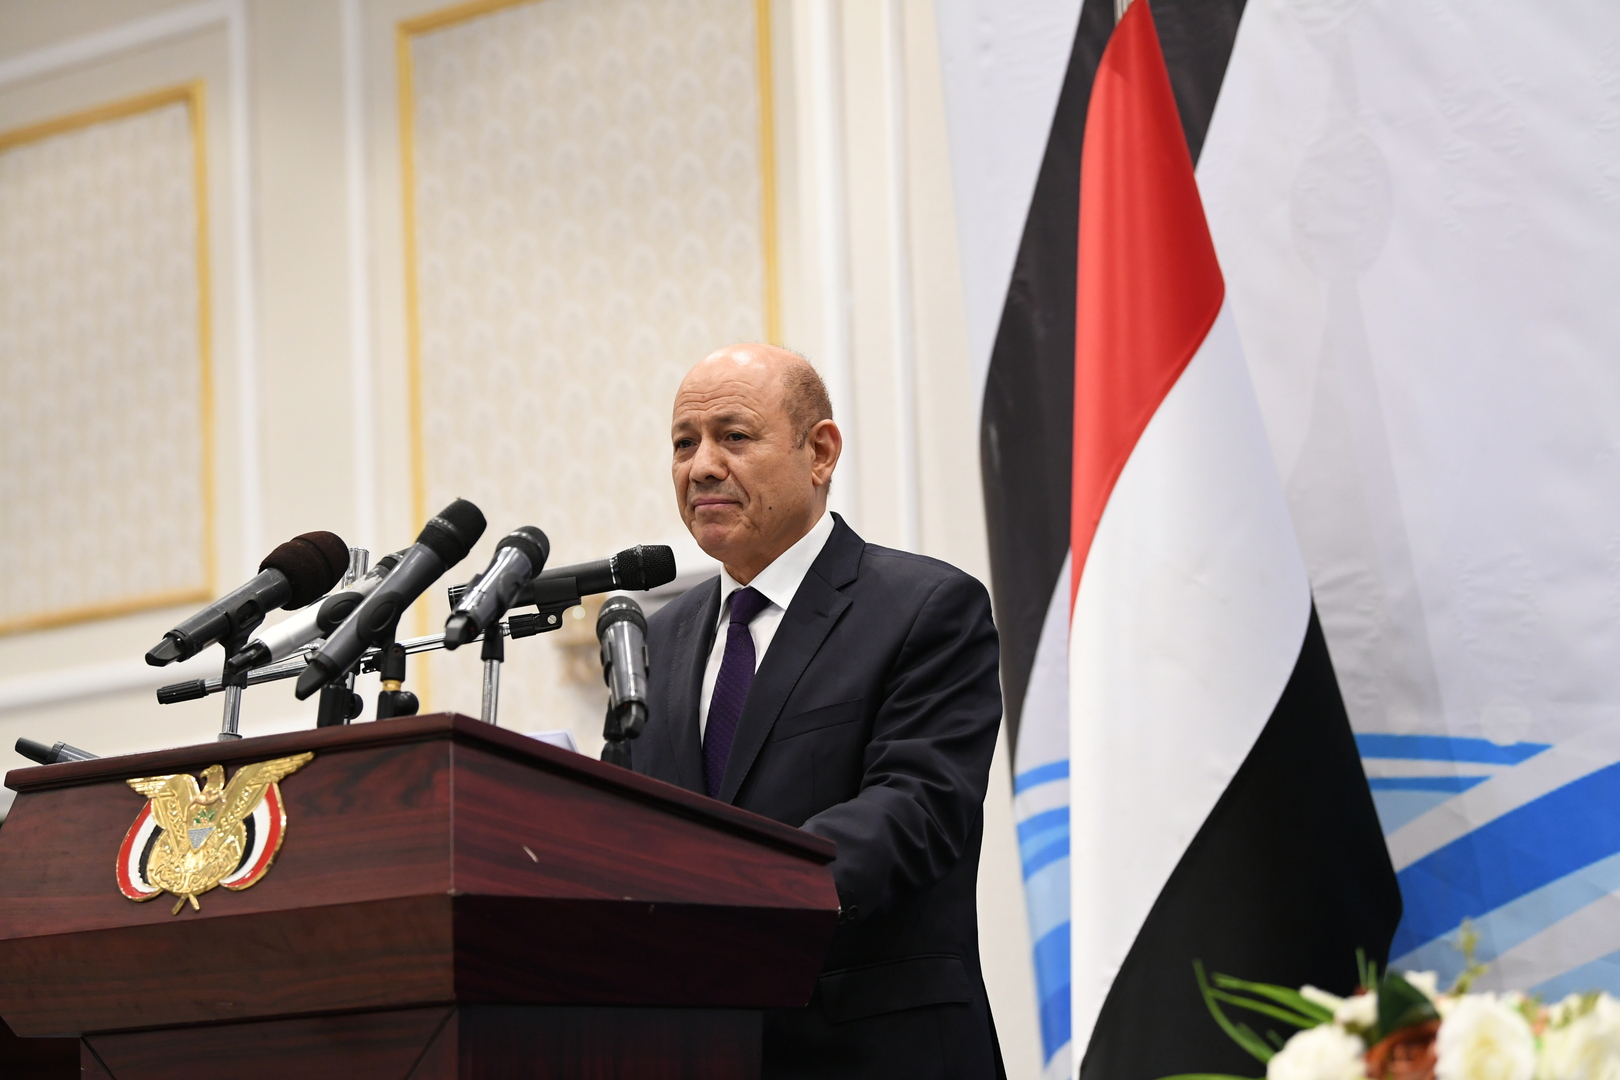 رئيس مجلس القيادة الرئاسي اليمني: مصر تقف معنا بهدف استعادة الدولة وإسقاط الانقلاب المدعوم من إيران